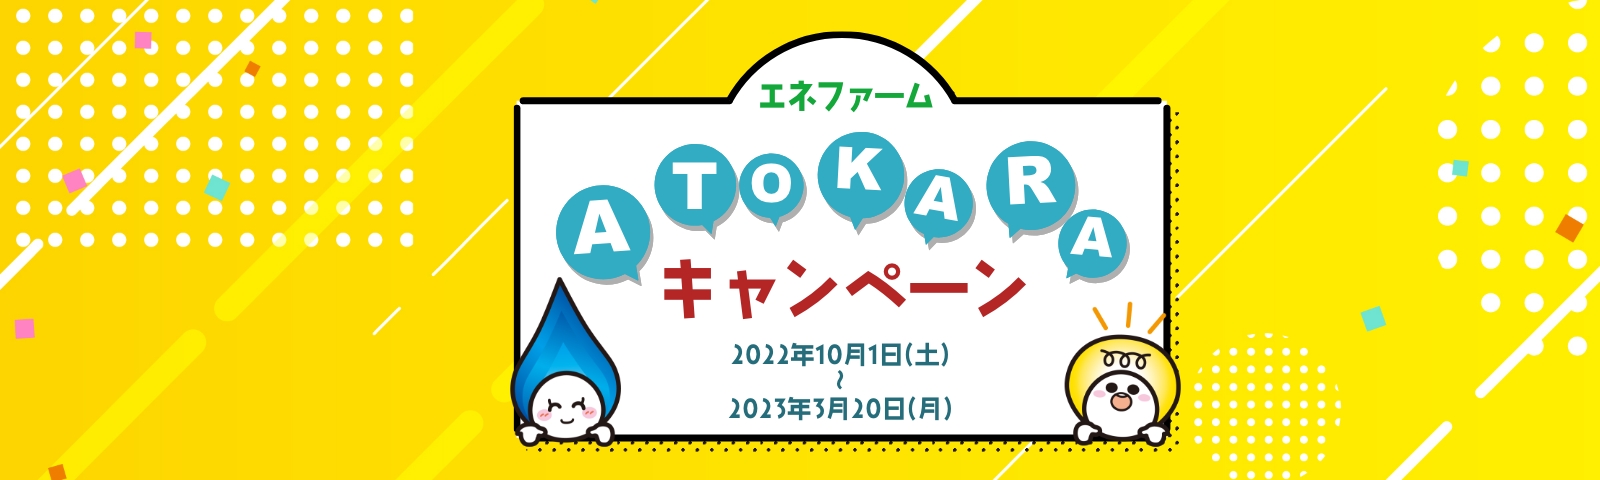 ATOKARAキャンペーン